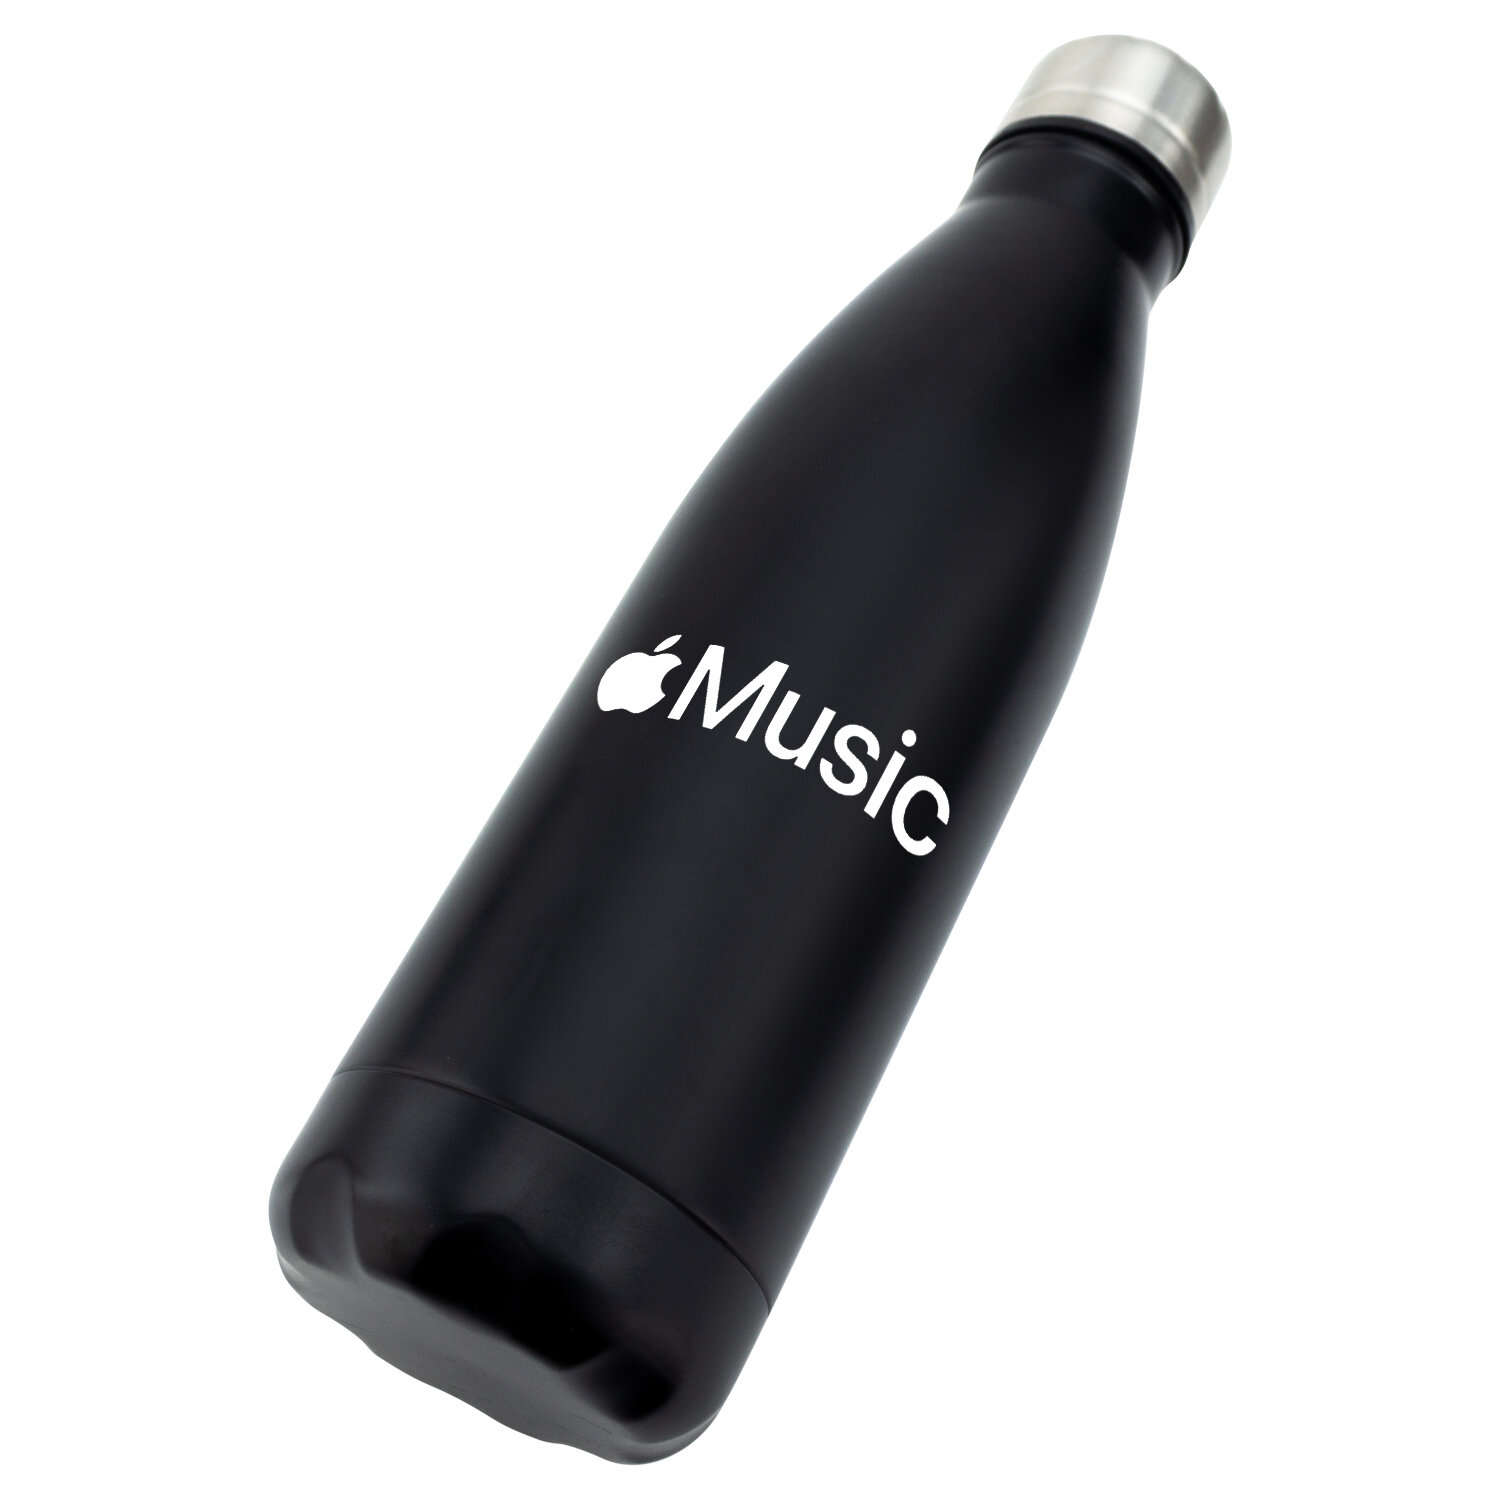 Apple-Insulted-Steel-Bottle-Black.jpg